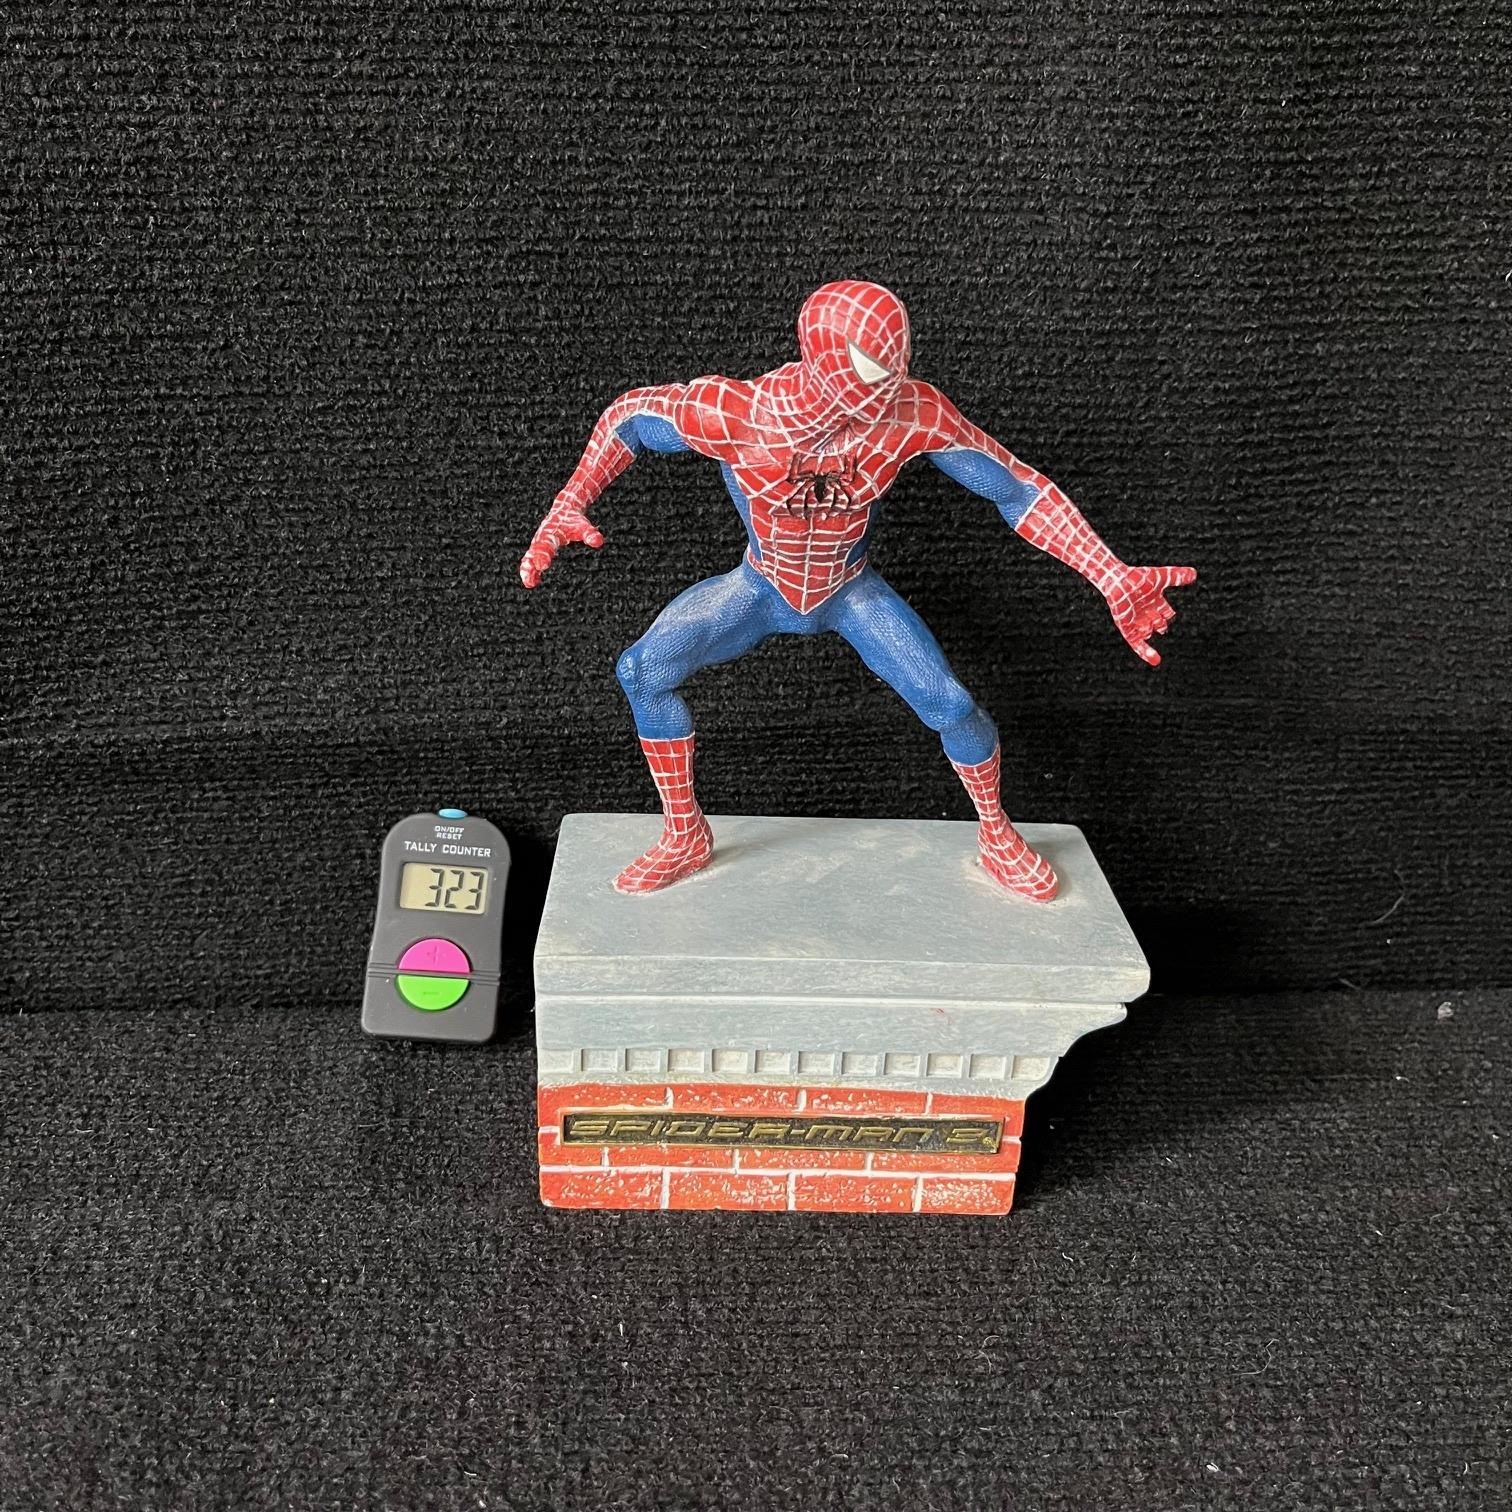 Amazing Spider-man 2 Movie Ceramic Statue